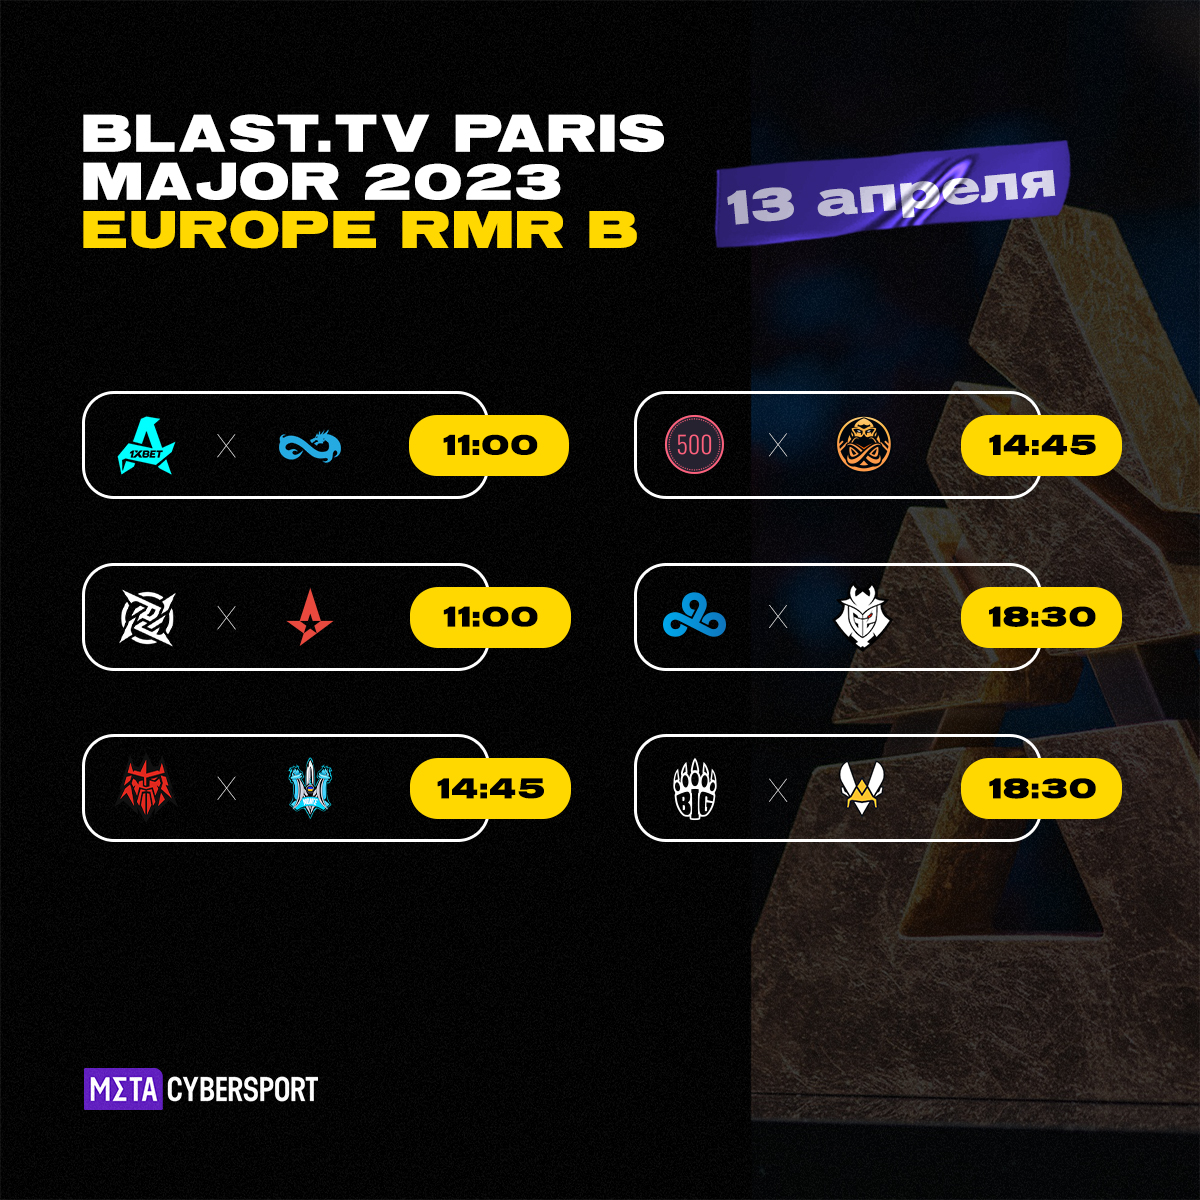 Расписание матчей BLAST.tv Paris Major 2023 Europe RMR B от 12 апреля